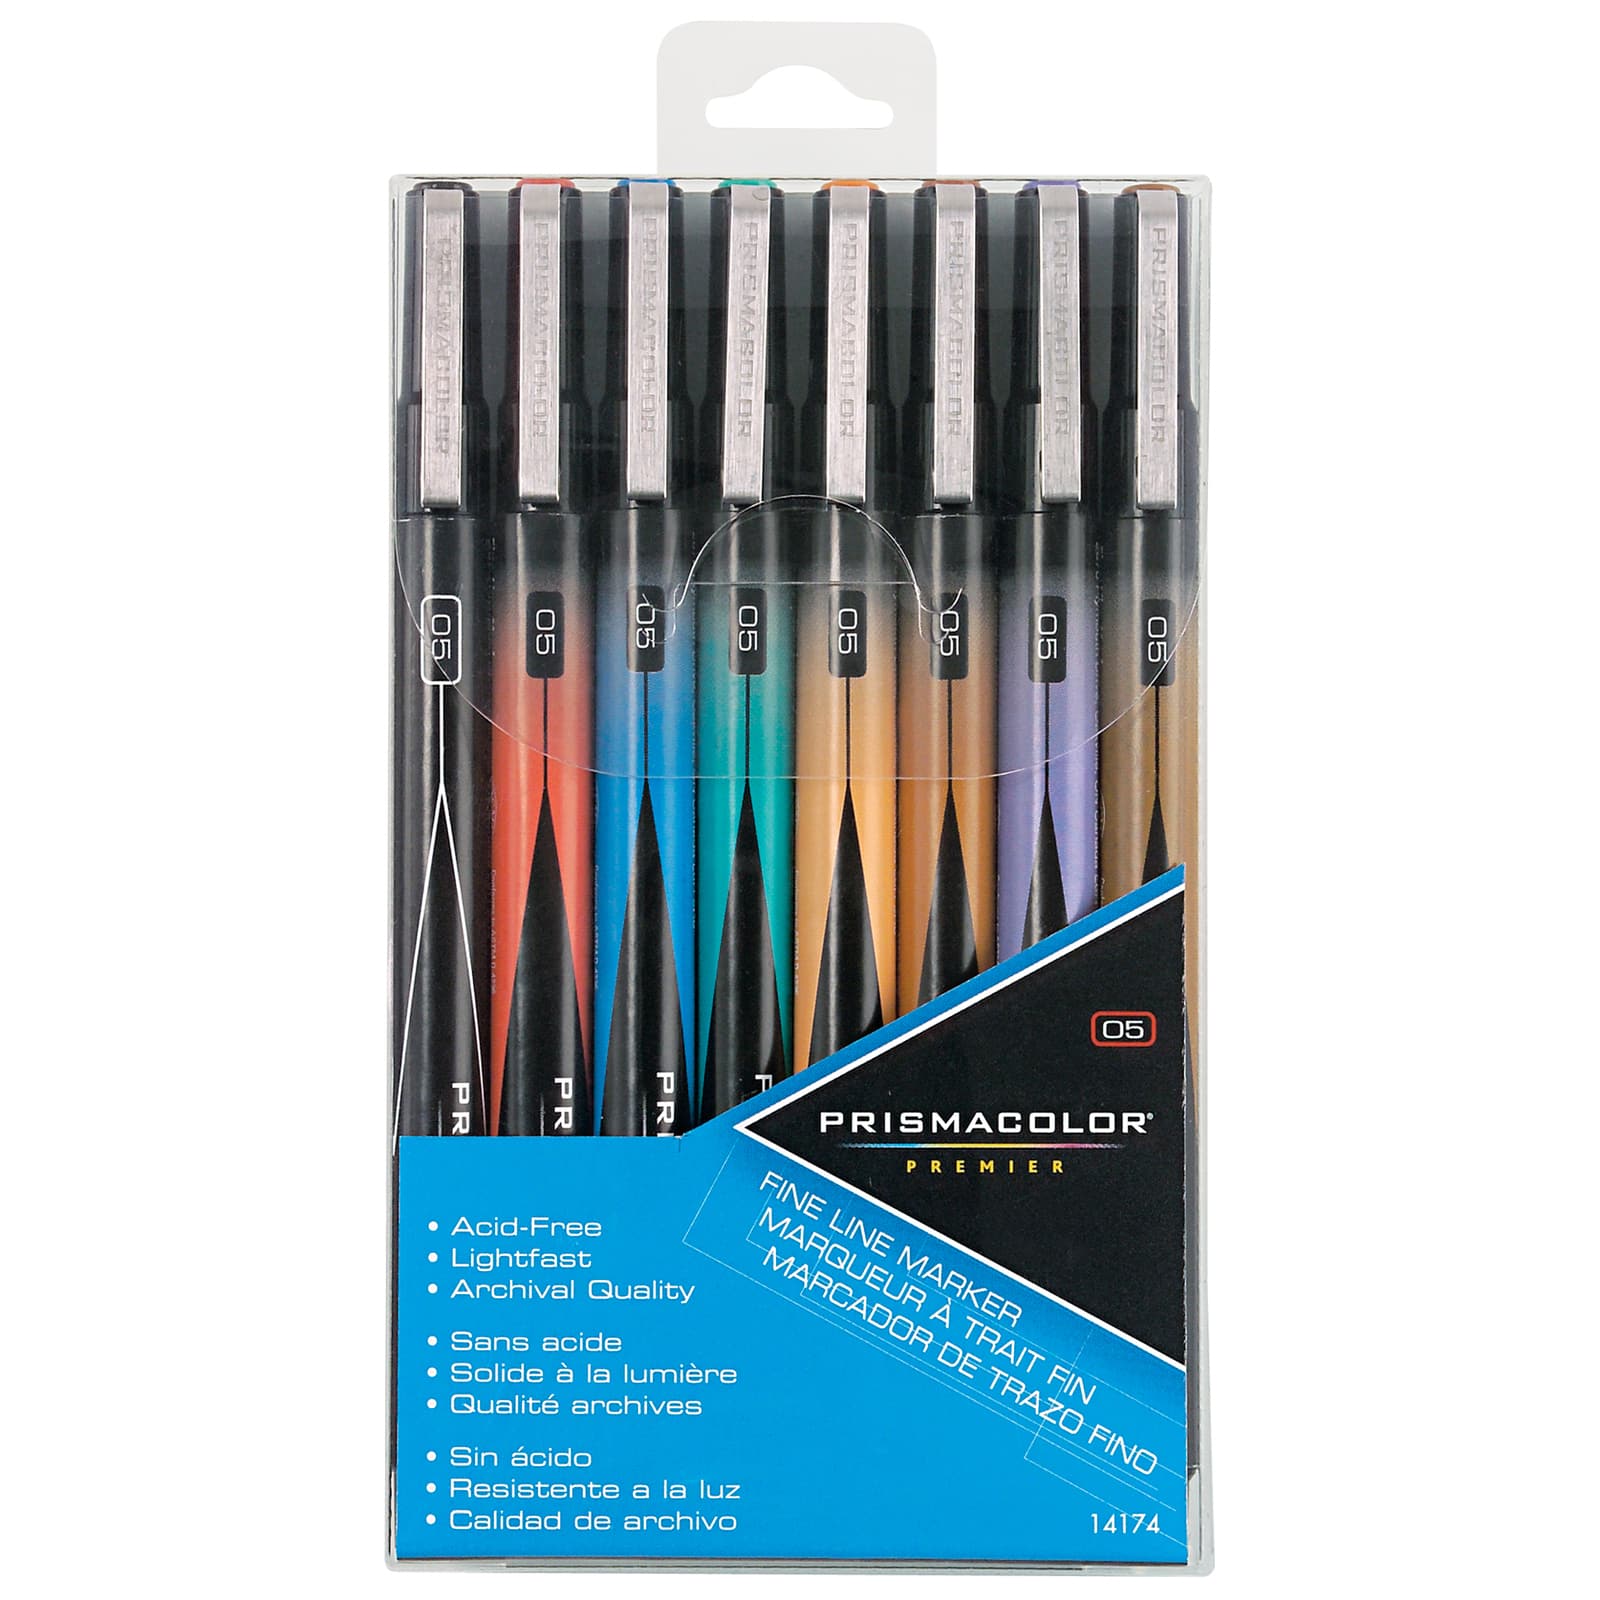 prismacolor marker sets